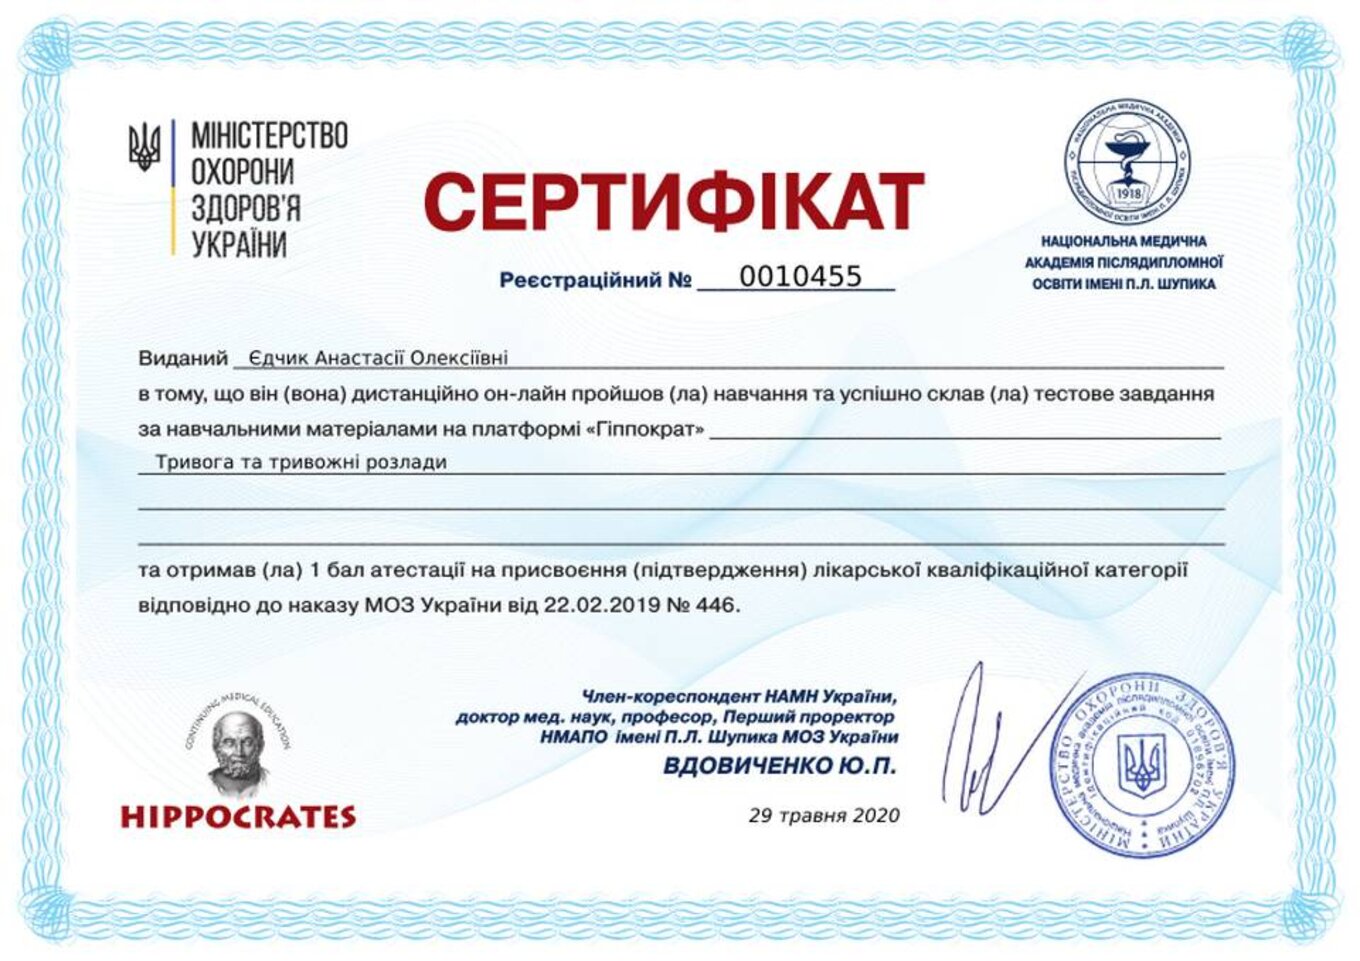 certificates/yedchik-anastasiya-oleksiyivna/erc-edchik-cert-71.jpg